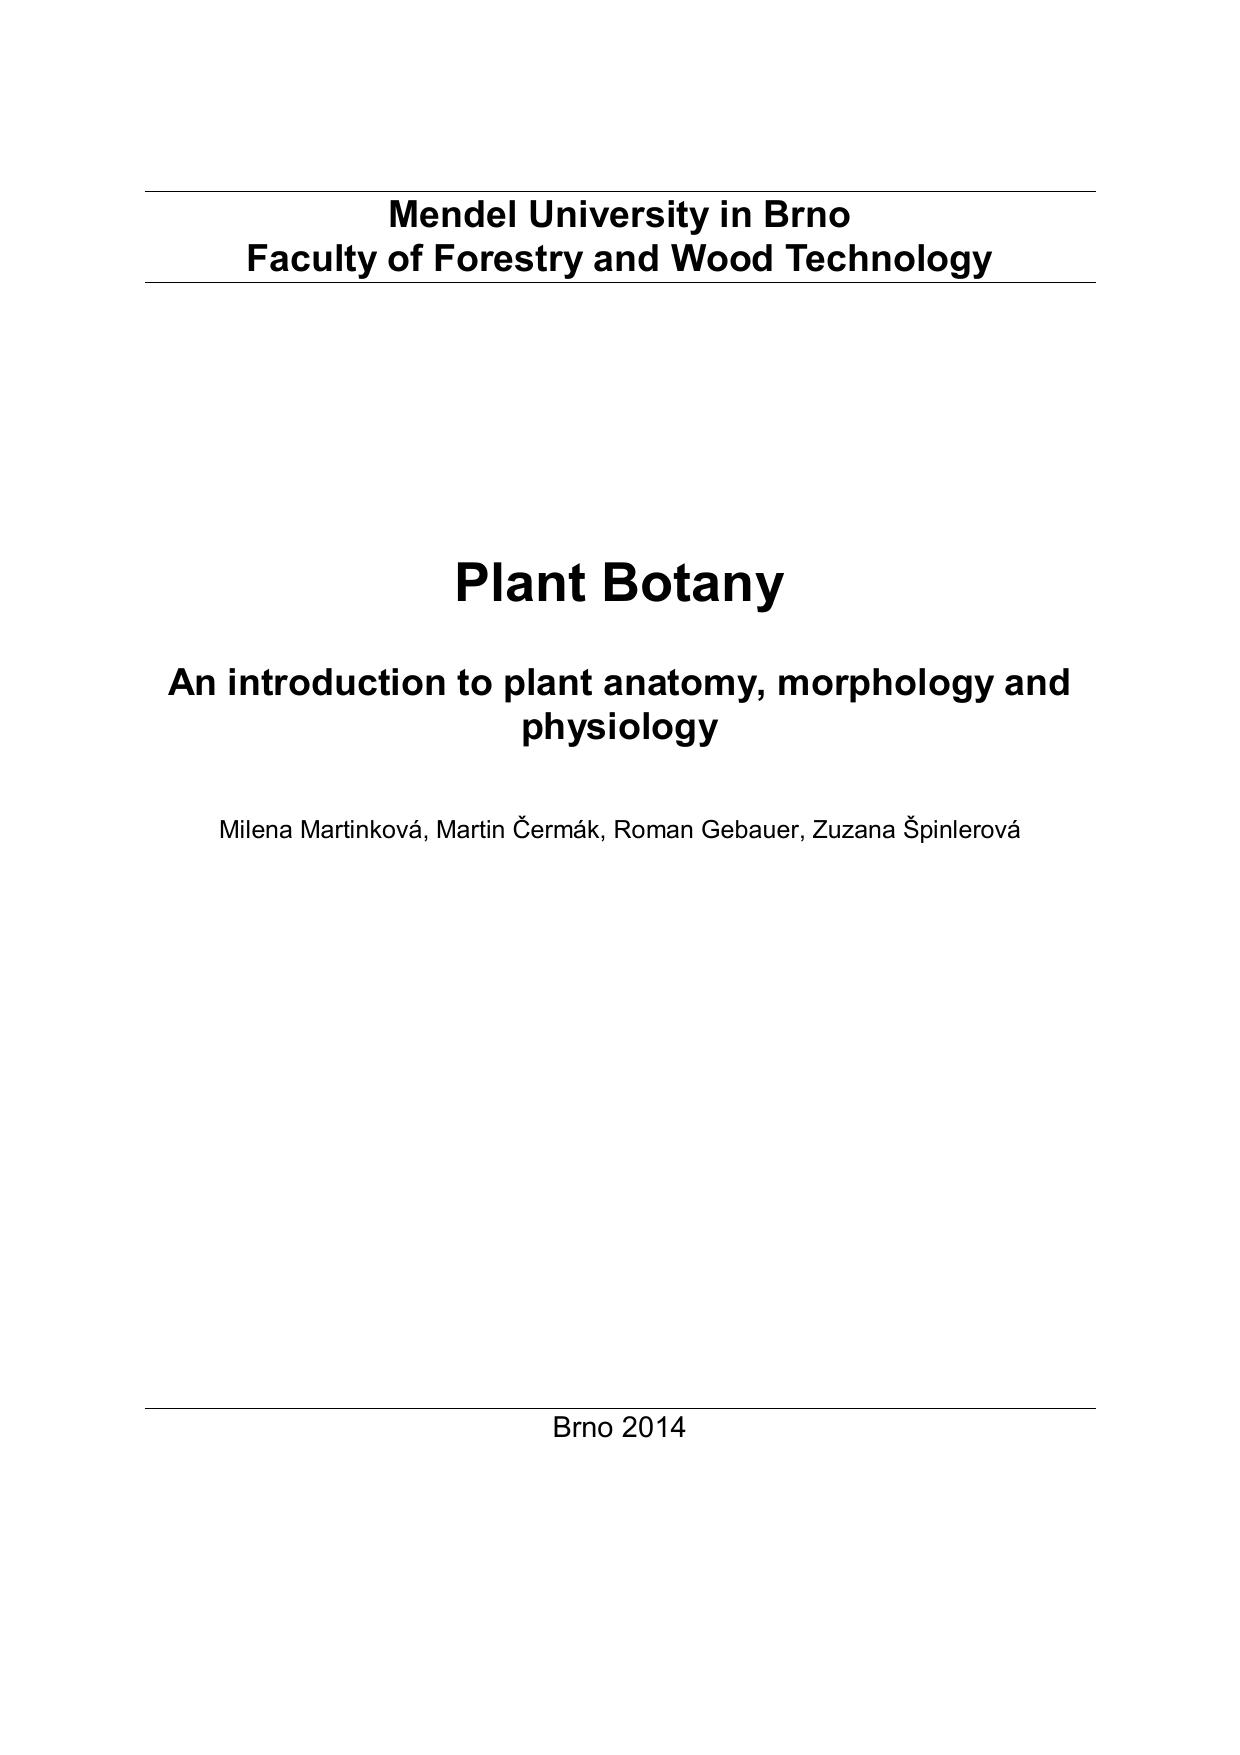 Plant botany – Akela 2014